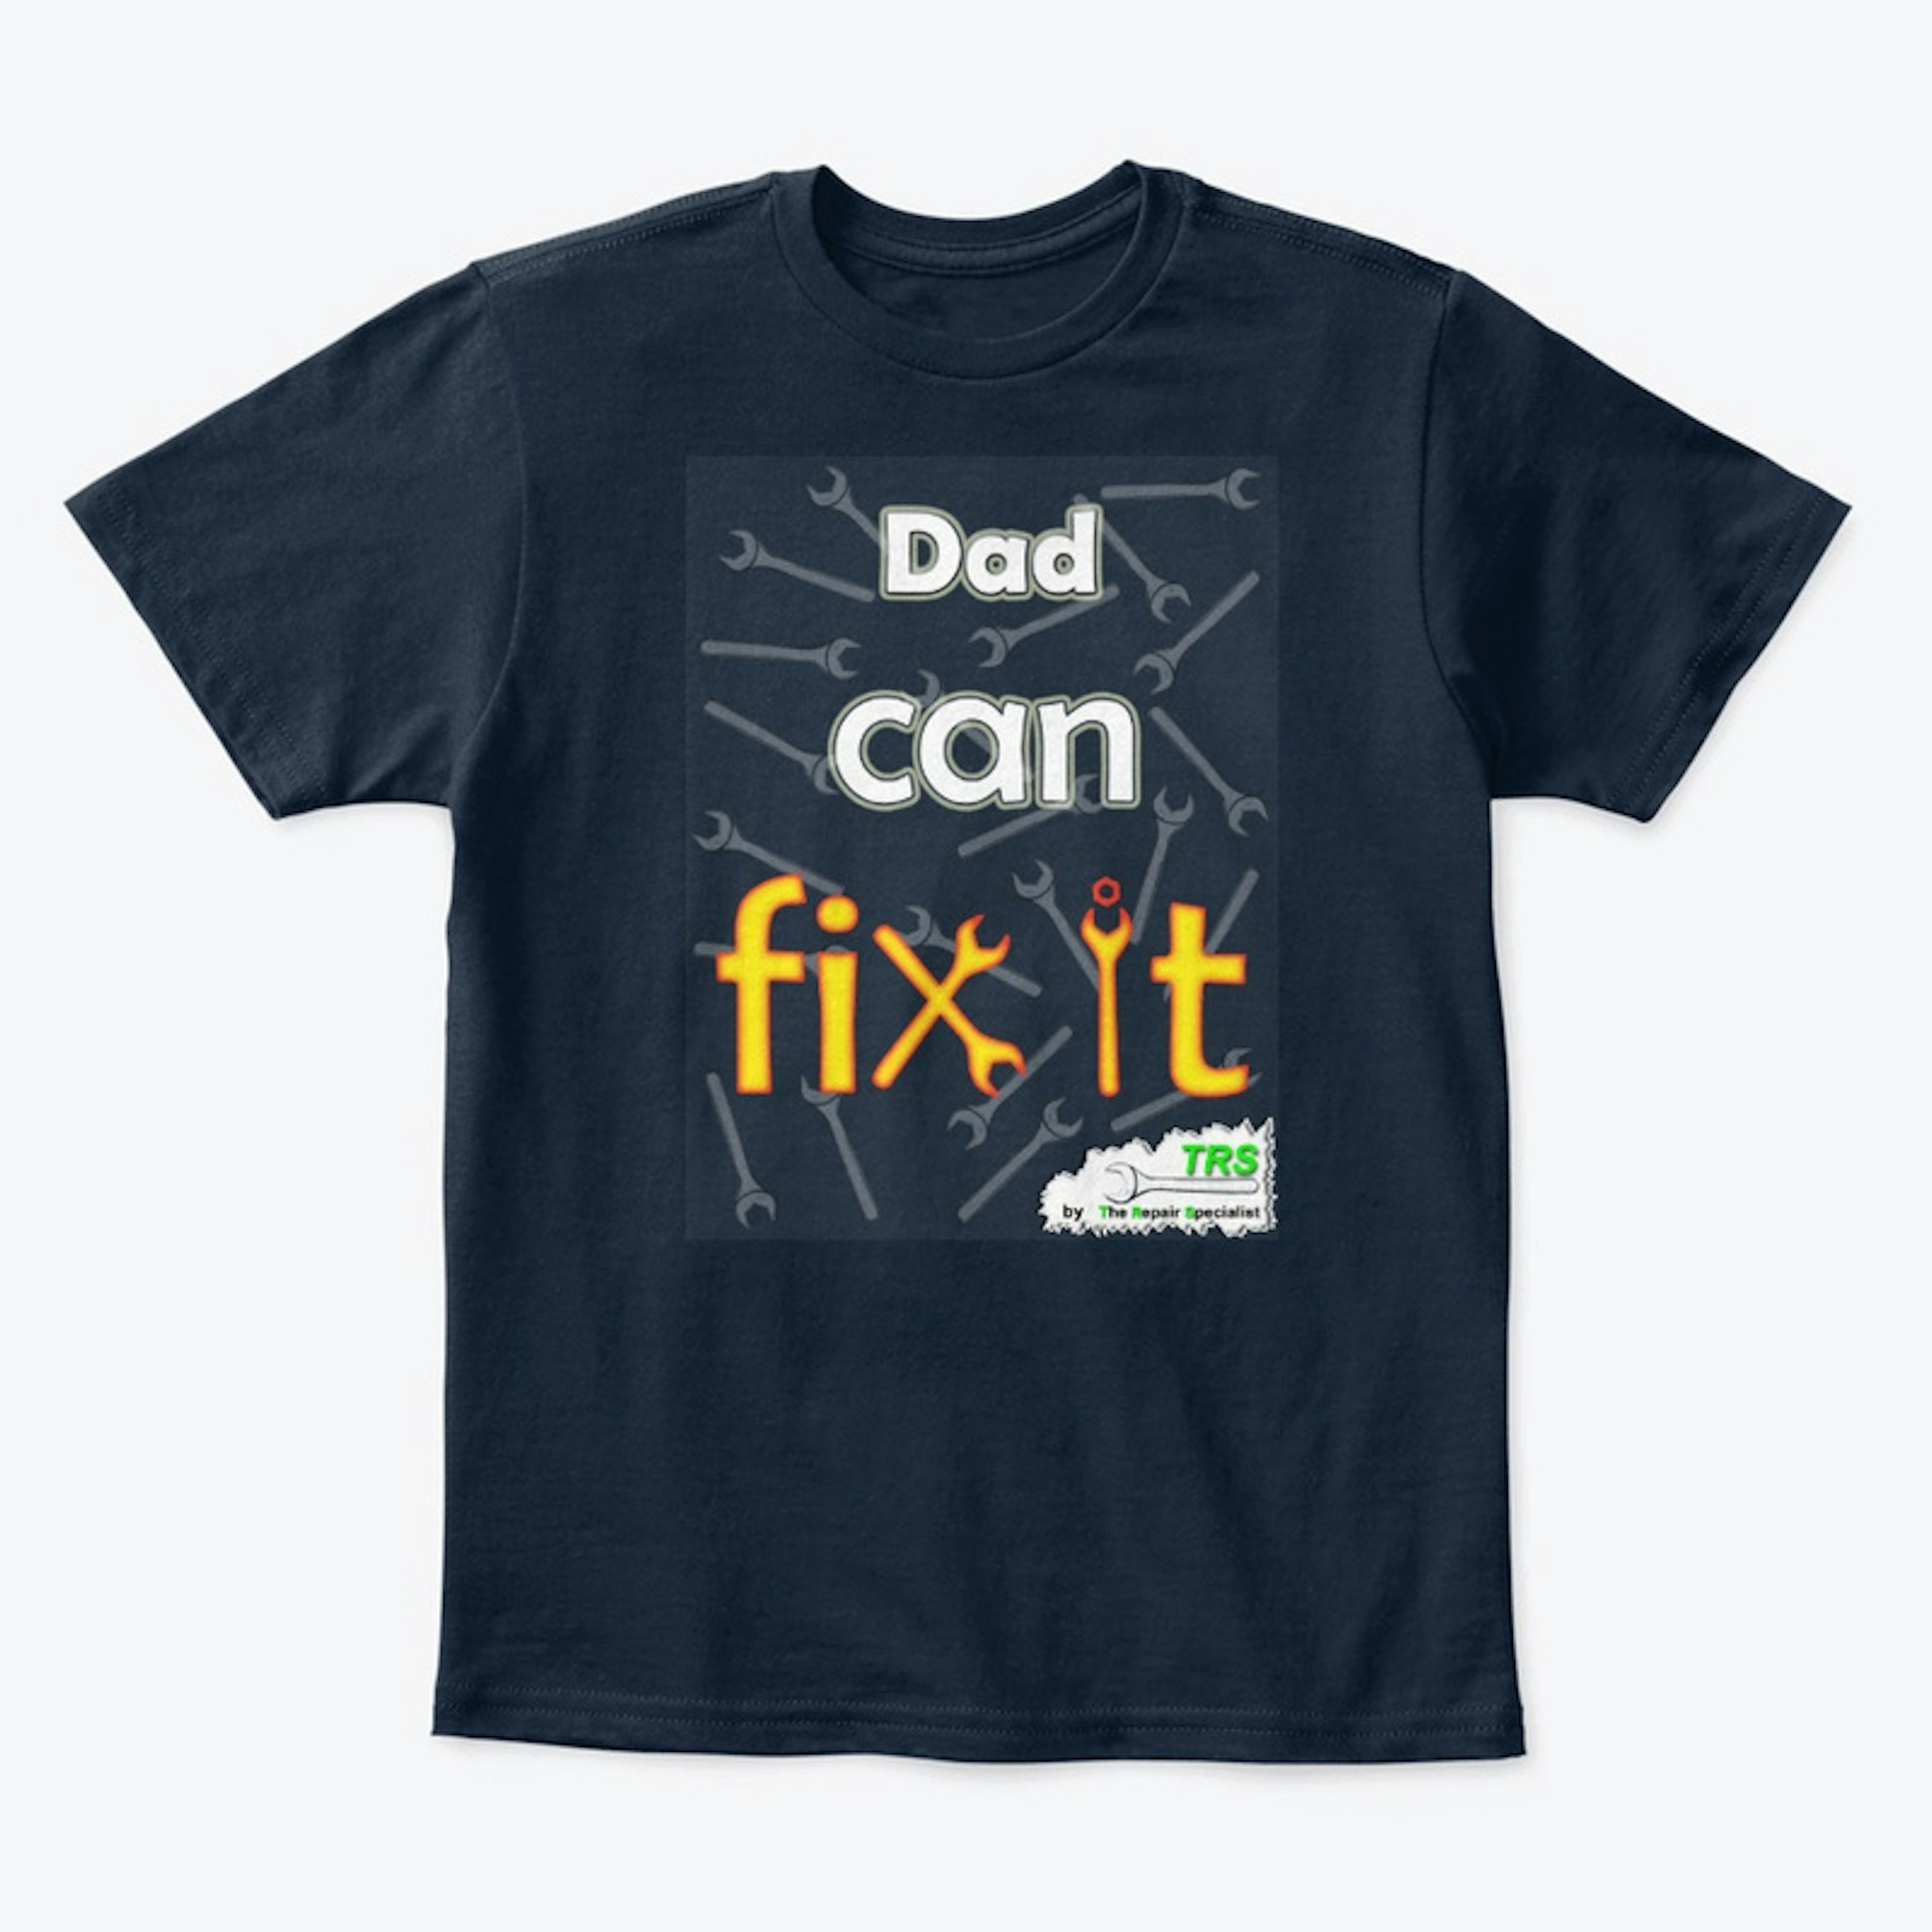 Dad can fix it - Kids 